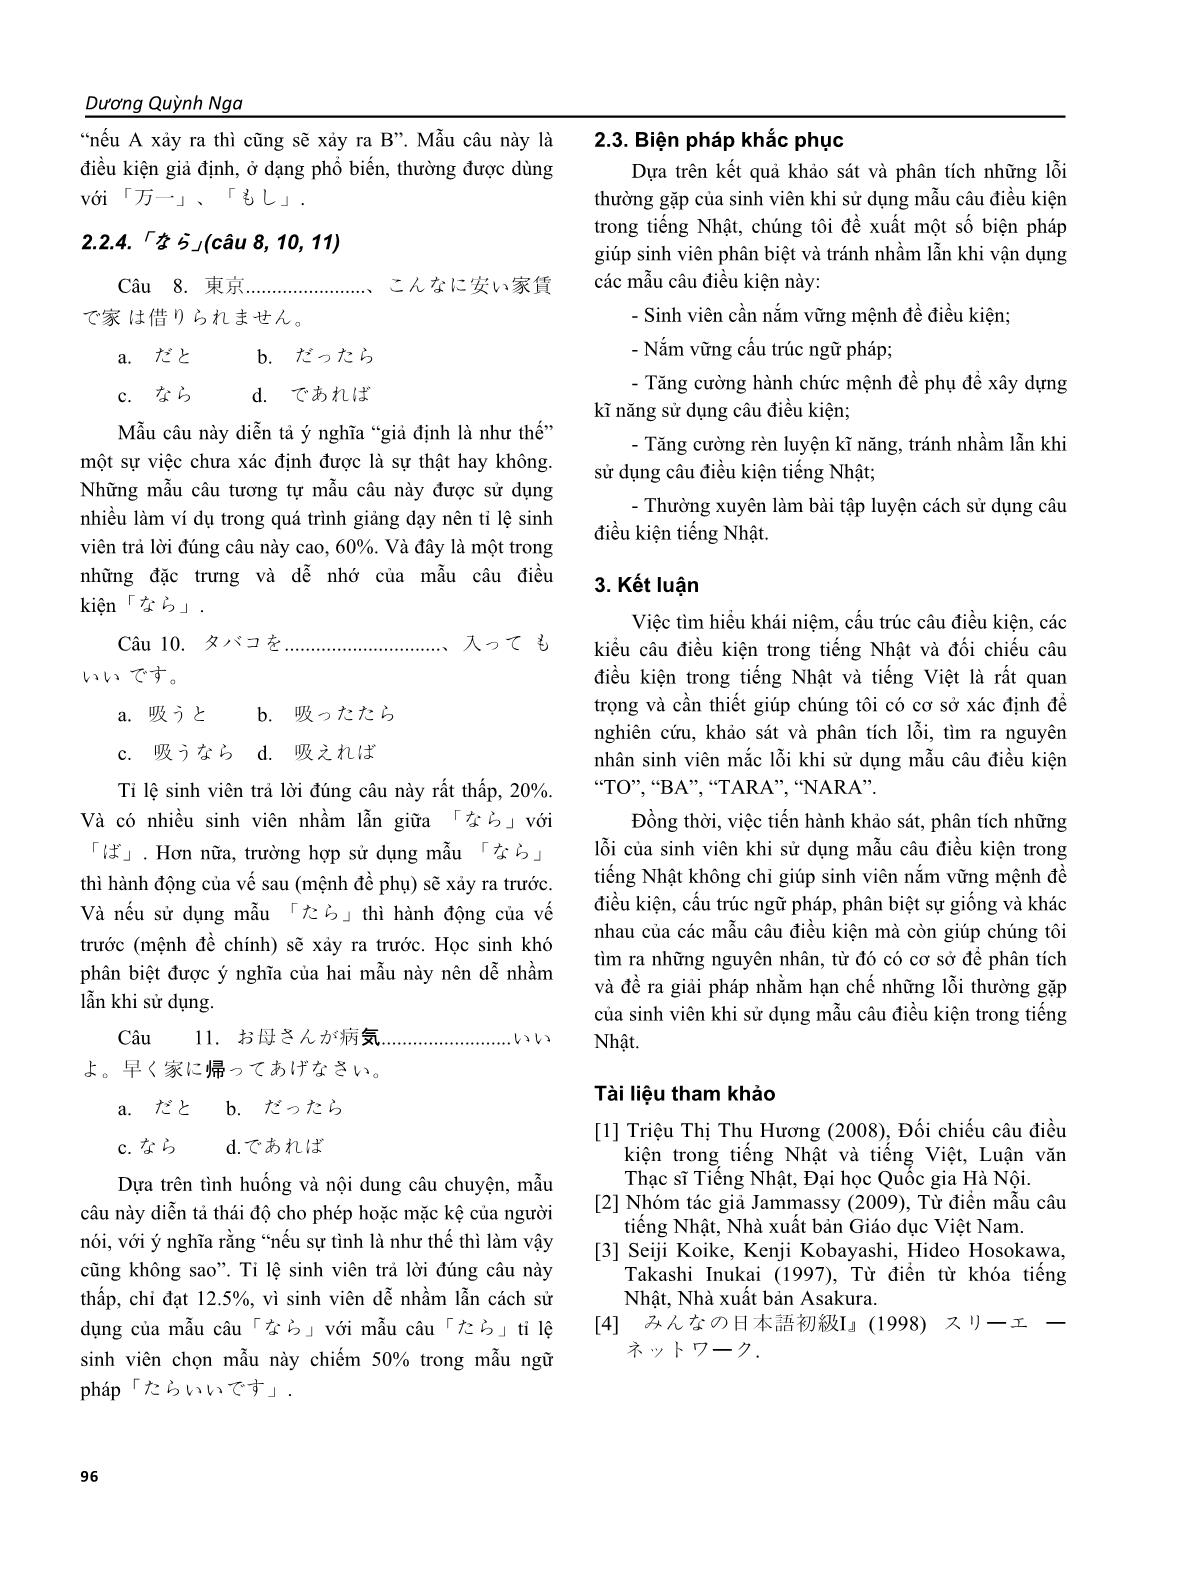 Khảo sát lỗi thường gặp của sinh viên tiếng Nhật sử dụng câu điều kiện “to”, “tara”, “nara”, “ba” và biện pháp khắc phục trang 5